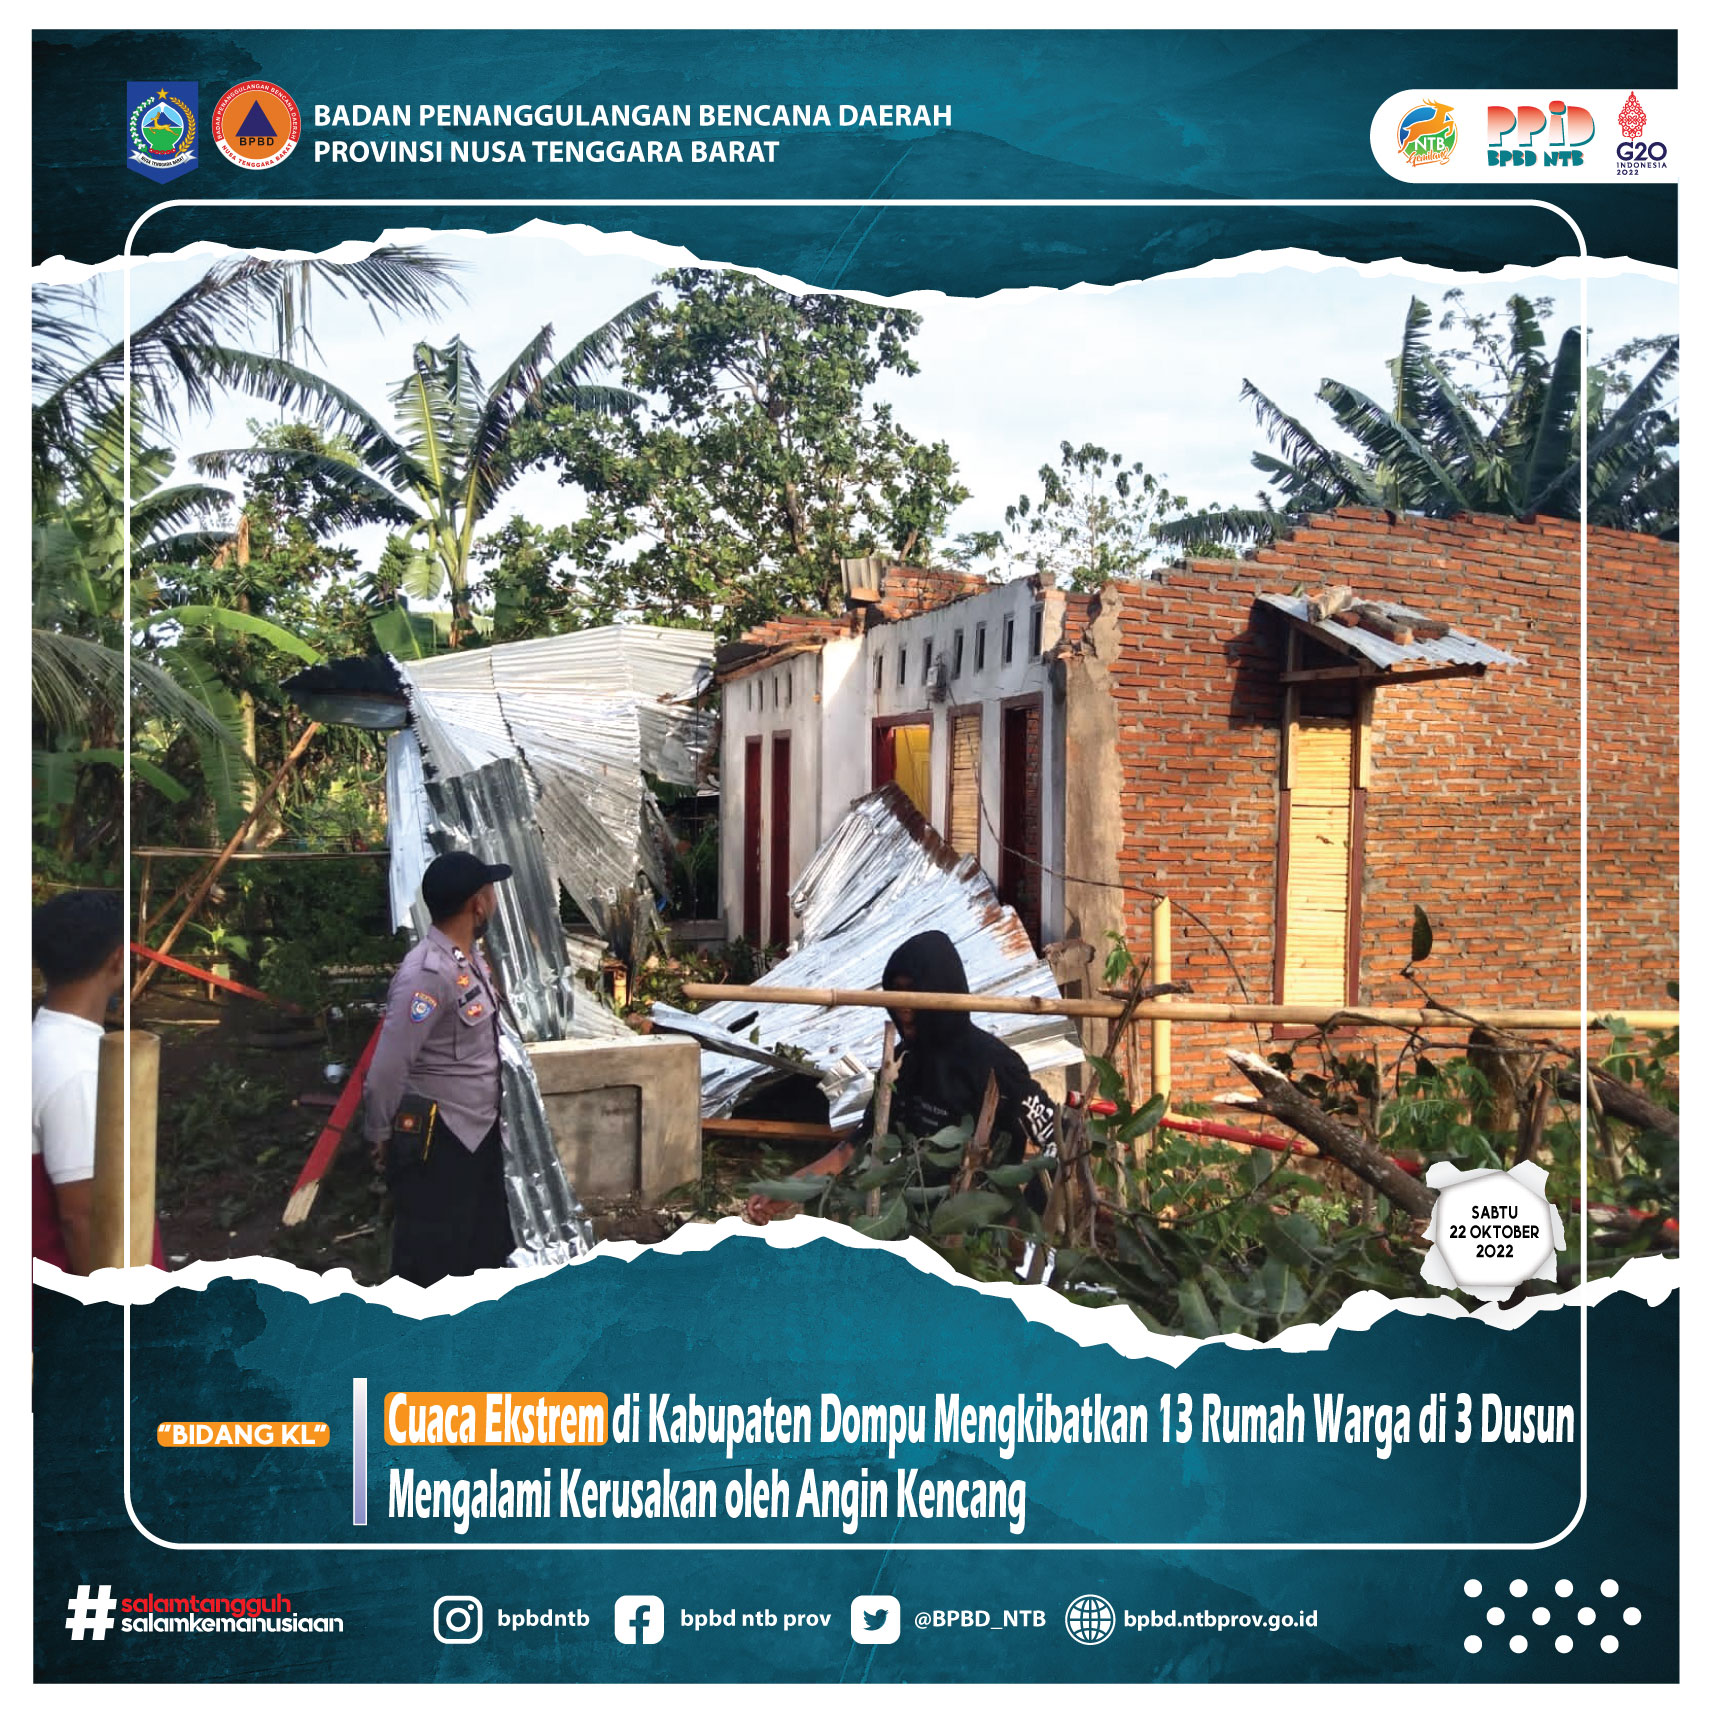 Cuaca Ekstrem di Kabupaten Dompu Mengkibatkan 13 Rumah Warga di 3 Dusun Mengalami Kerusakan oleh Angin Kencang (Selasa, 22 Oktober 2022)